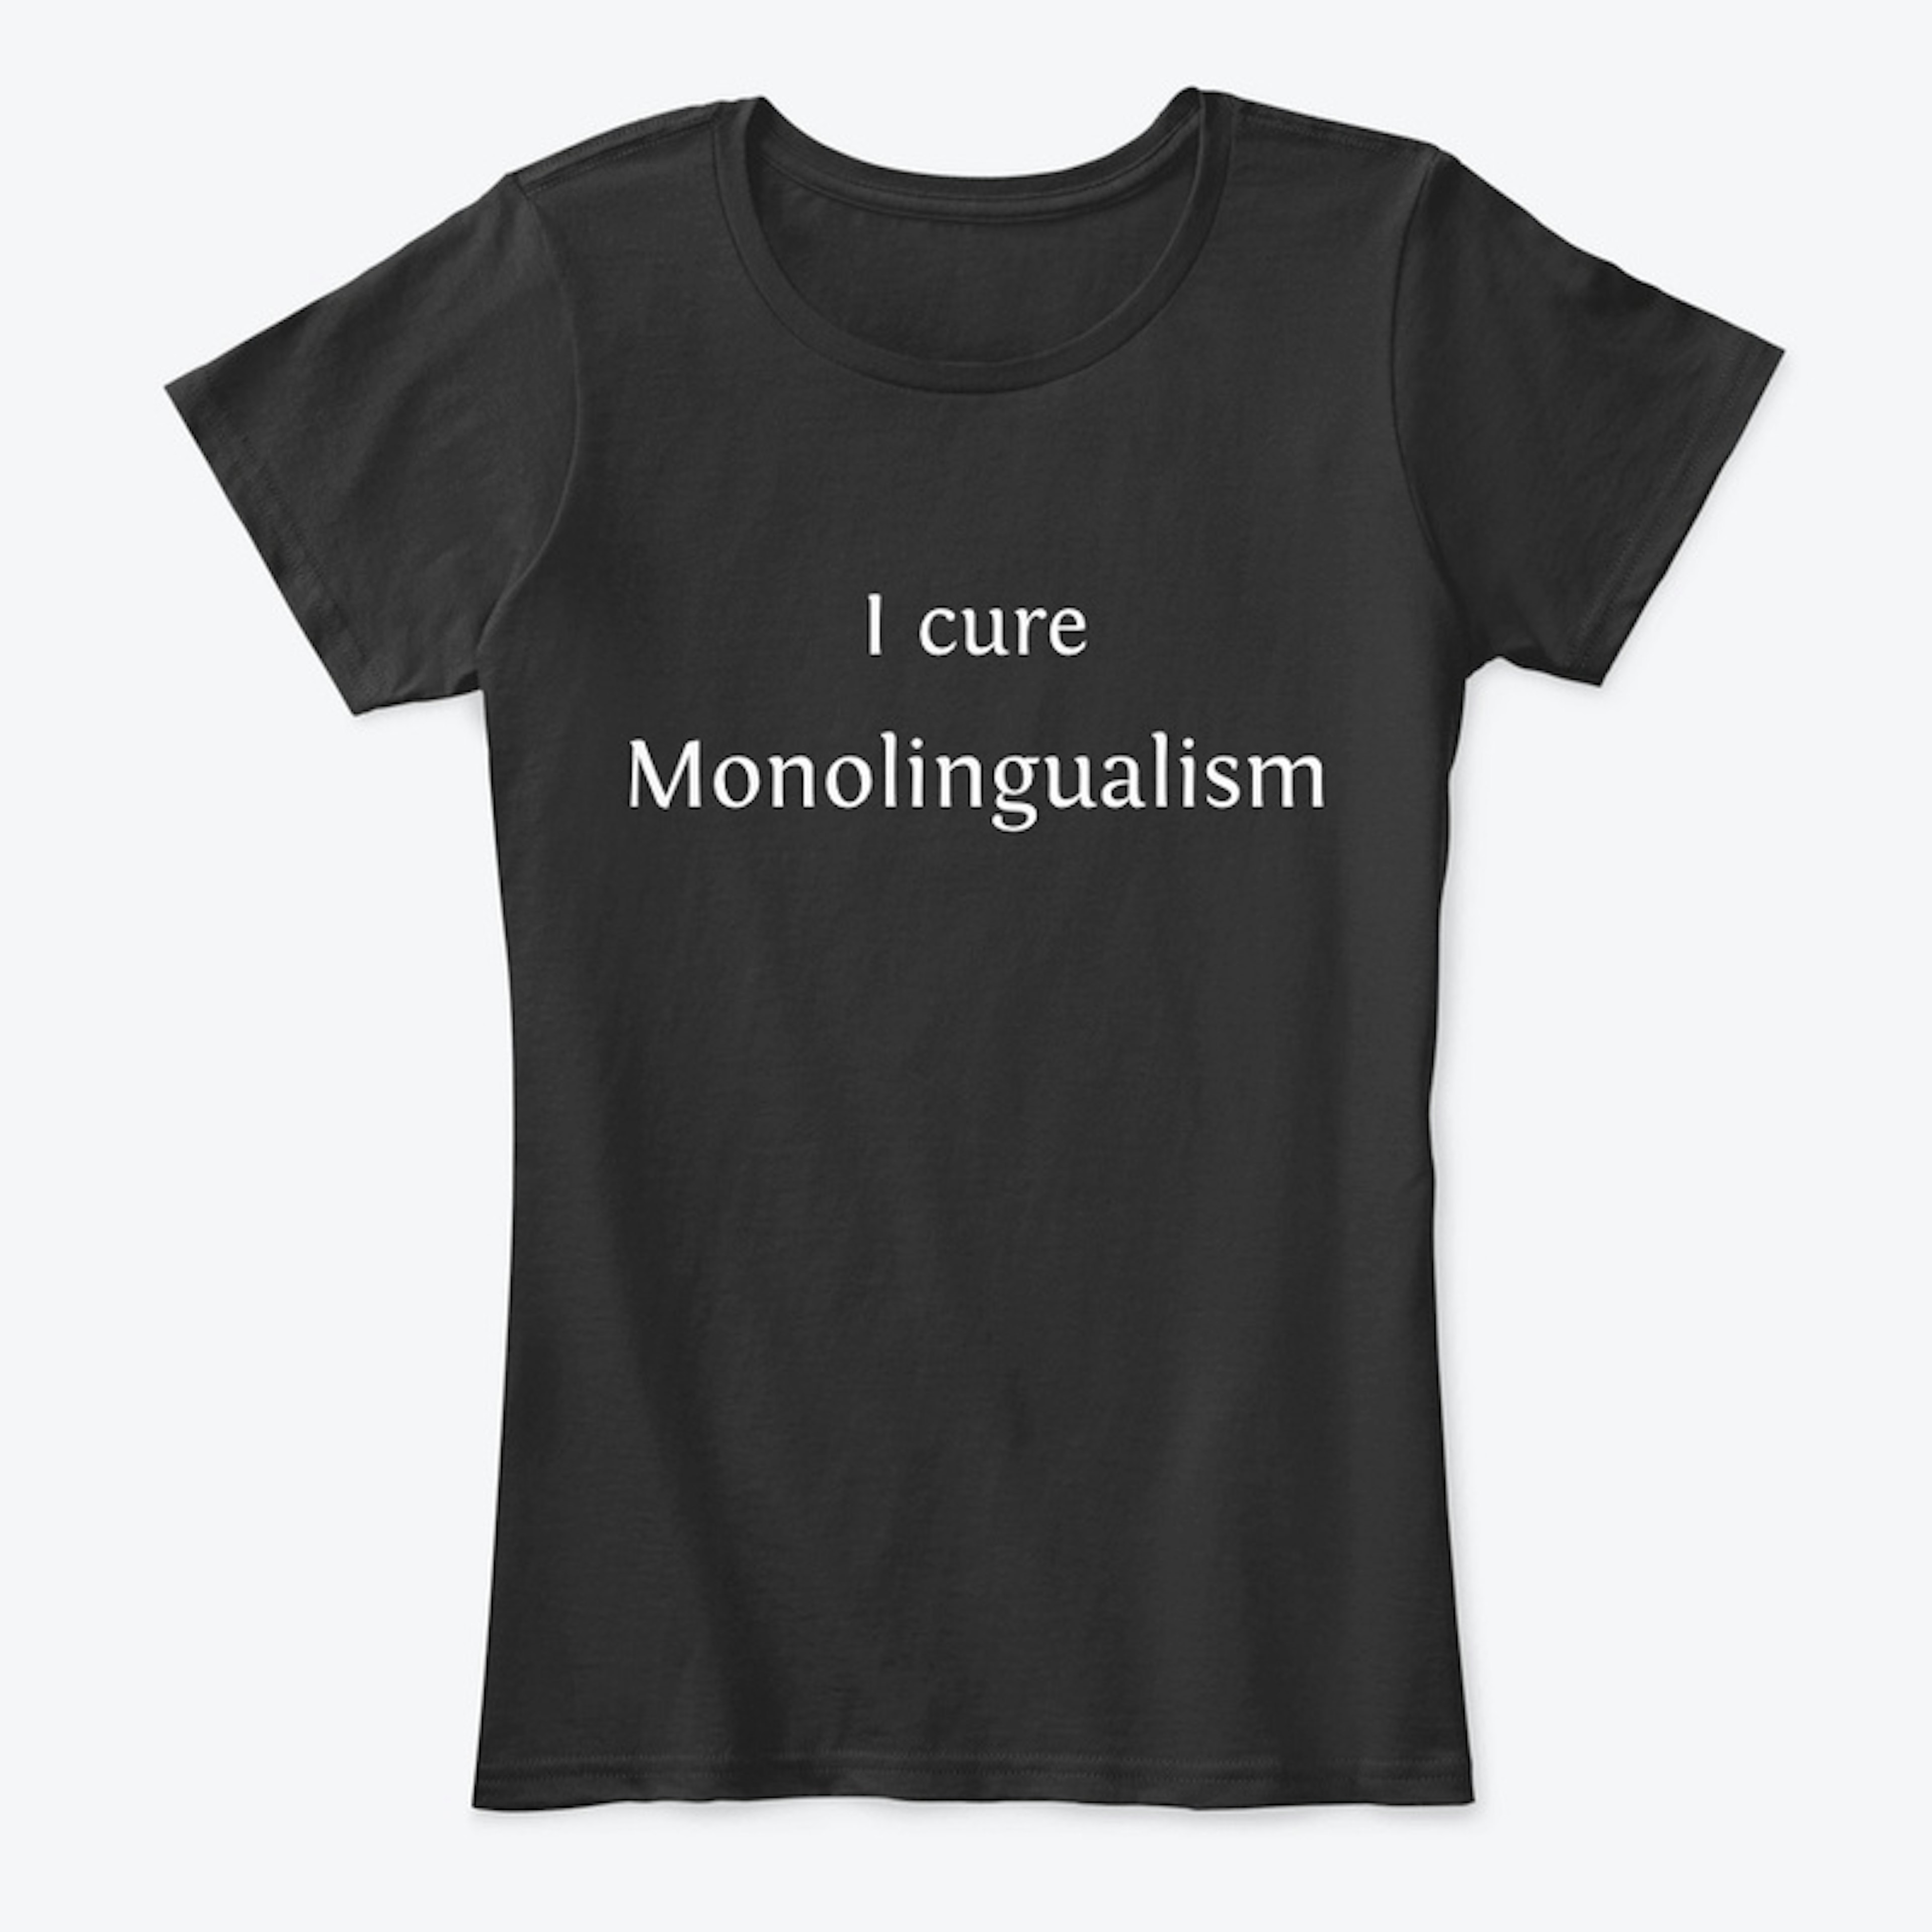 I cure monolingualism